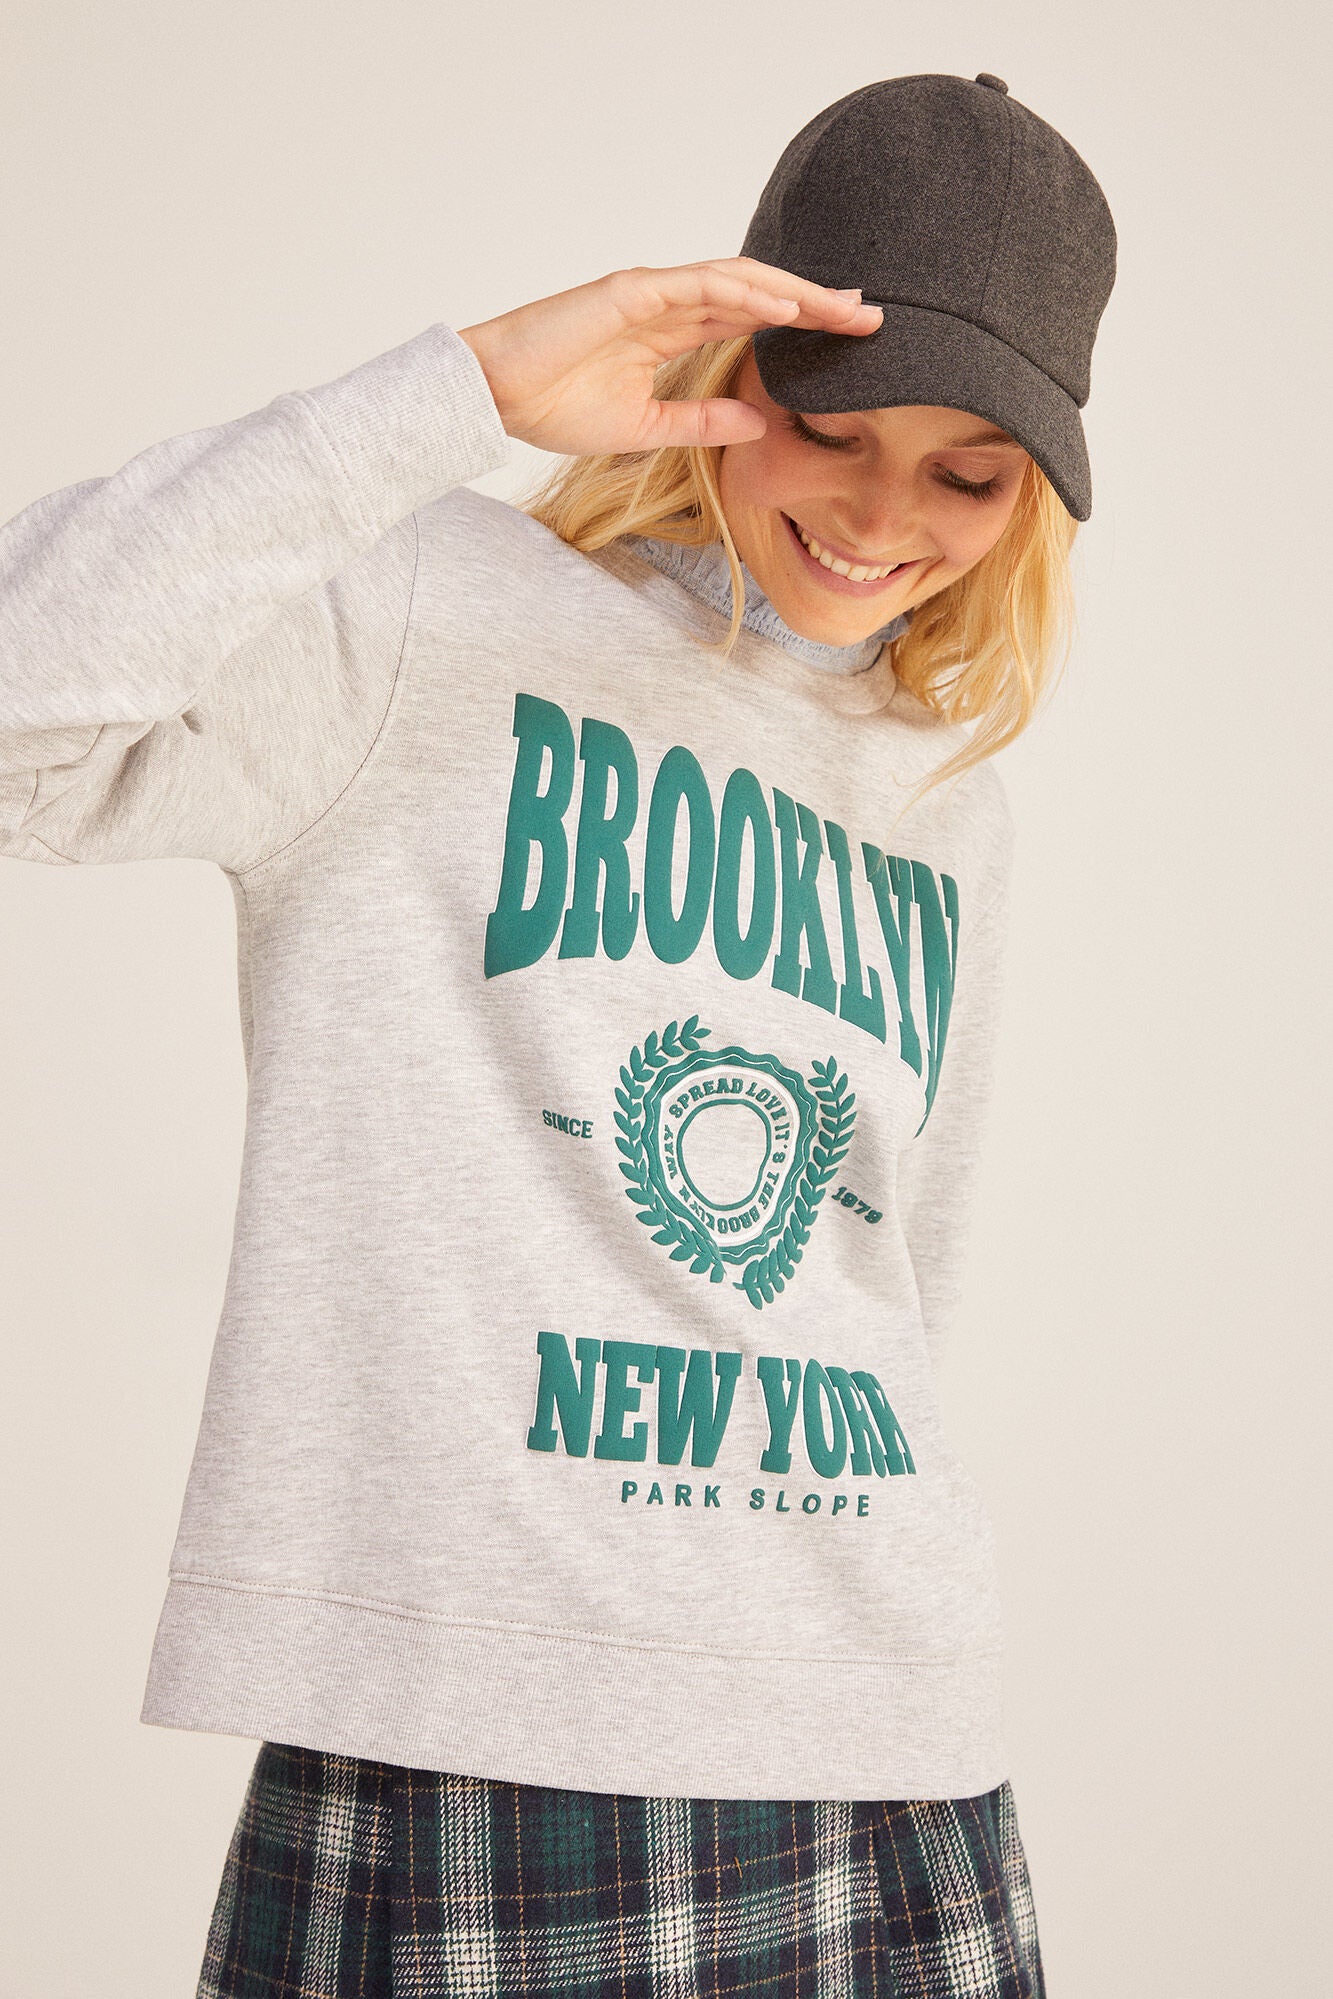 "Brooklyn" sweatshirt